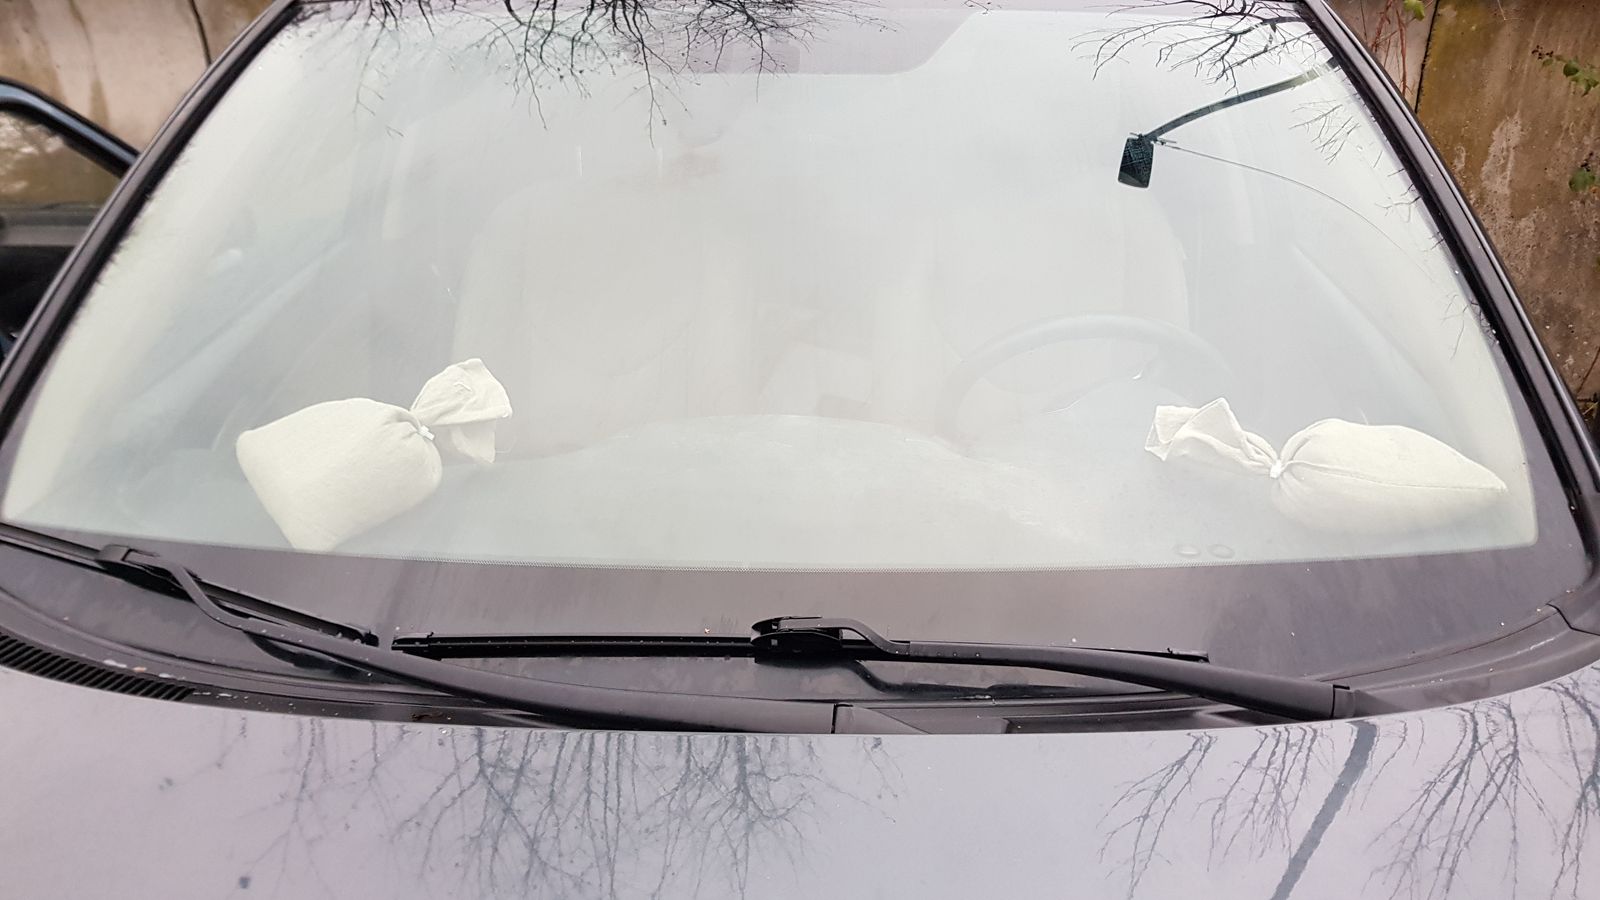 Eis vor der Nase: Autoscheiben von innen gefroren - was tun?